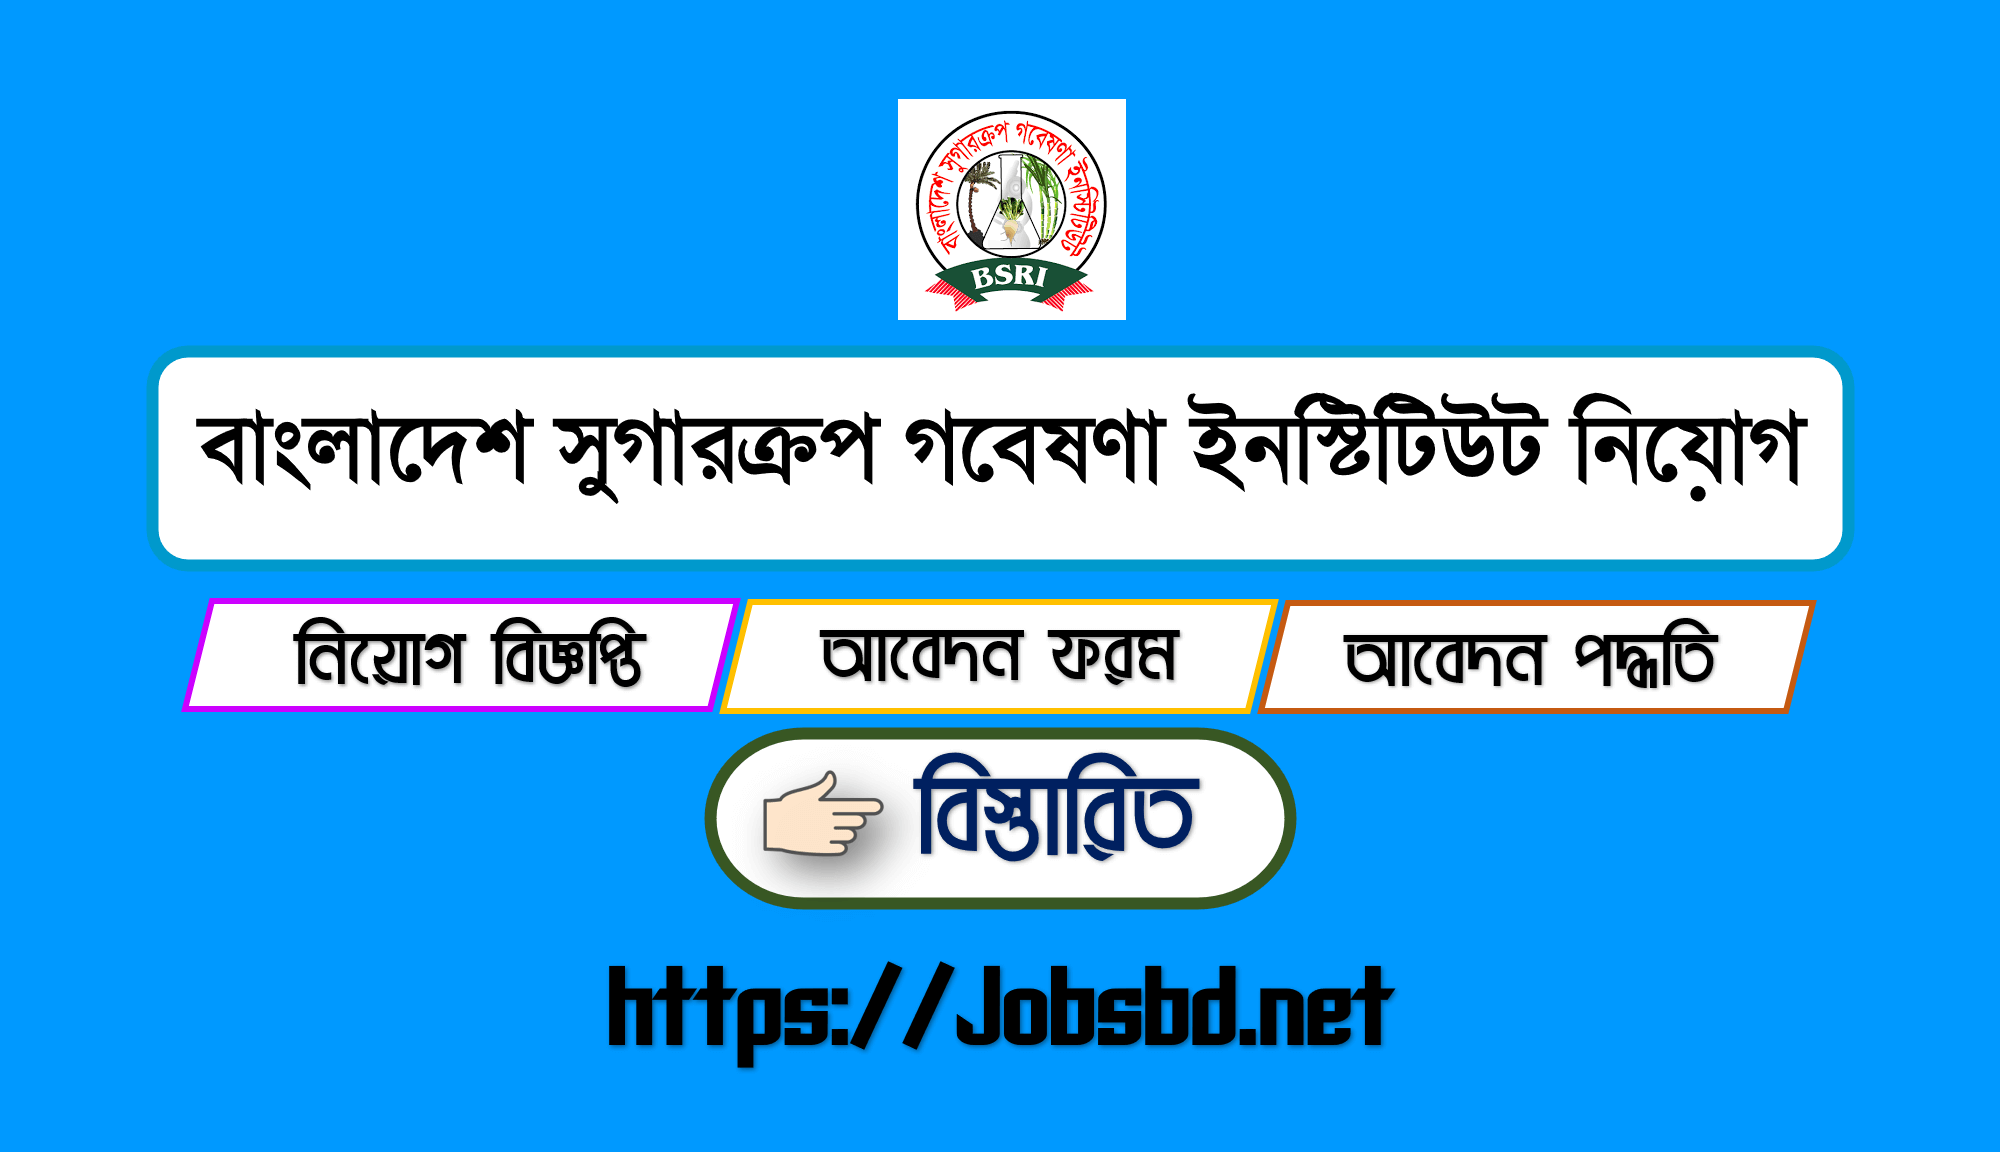 Bangladesh Sugarcrop Research Institute Job Circular